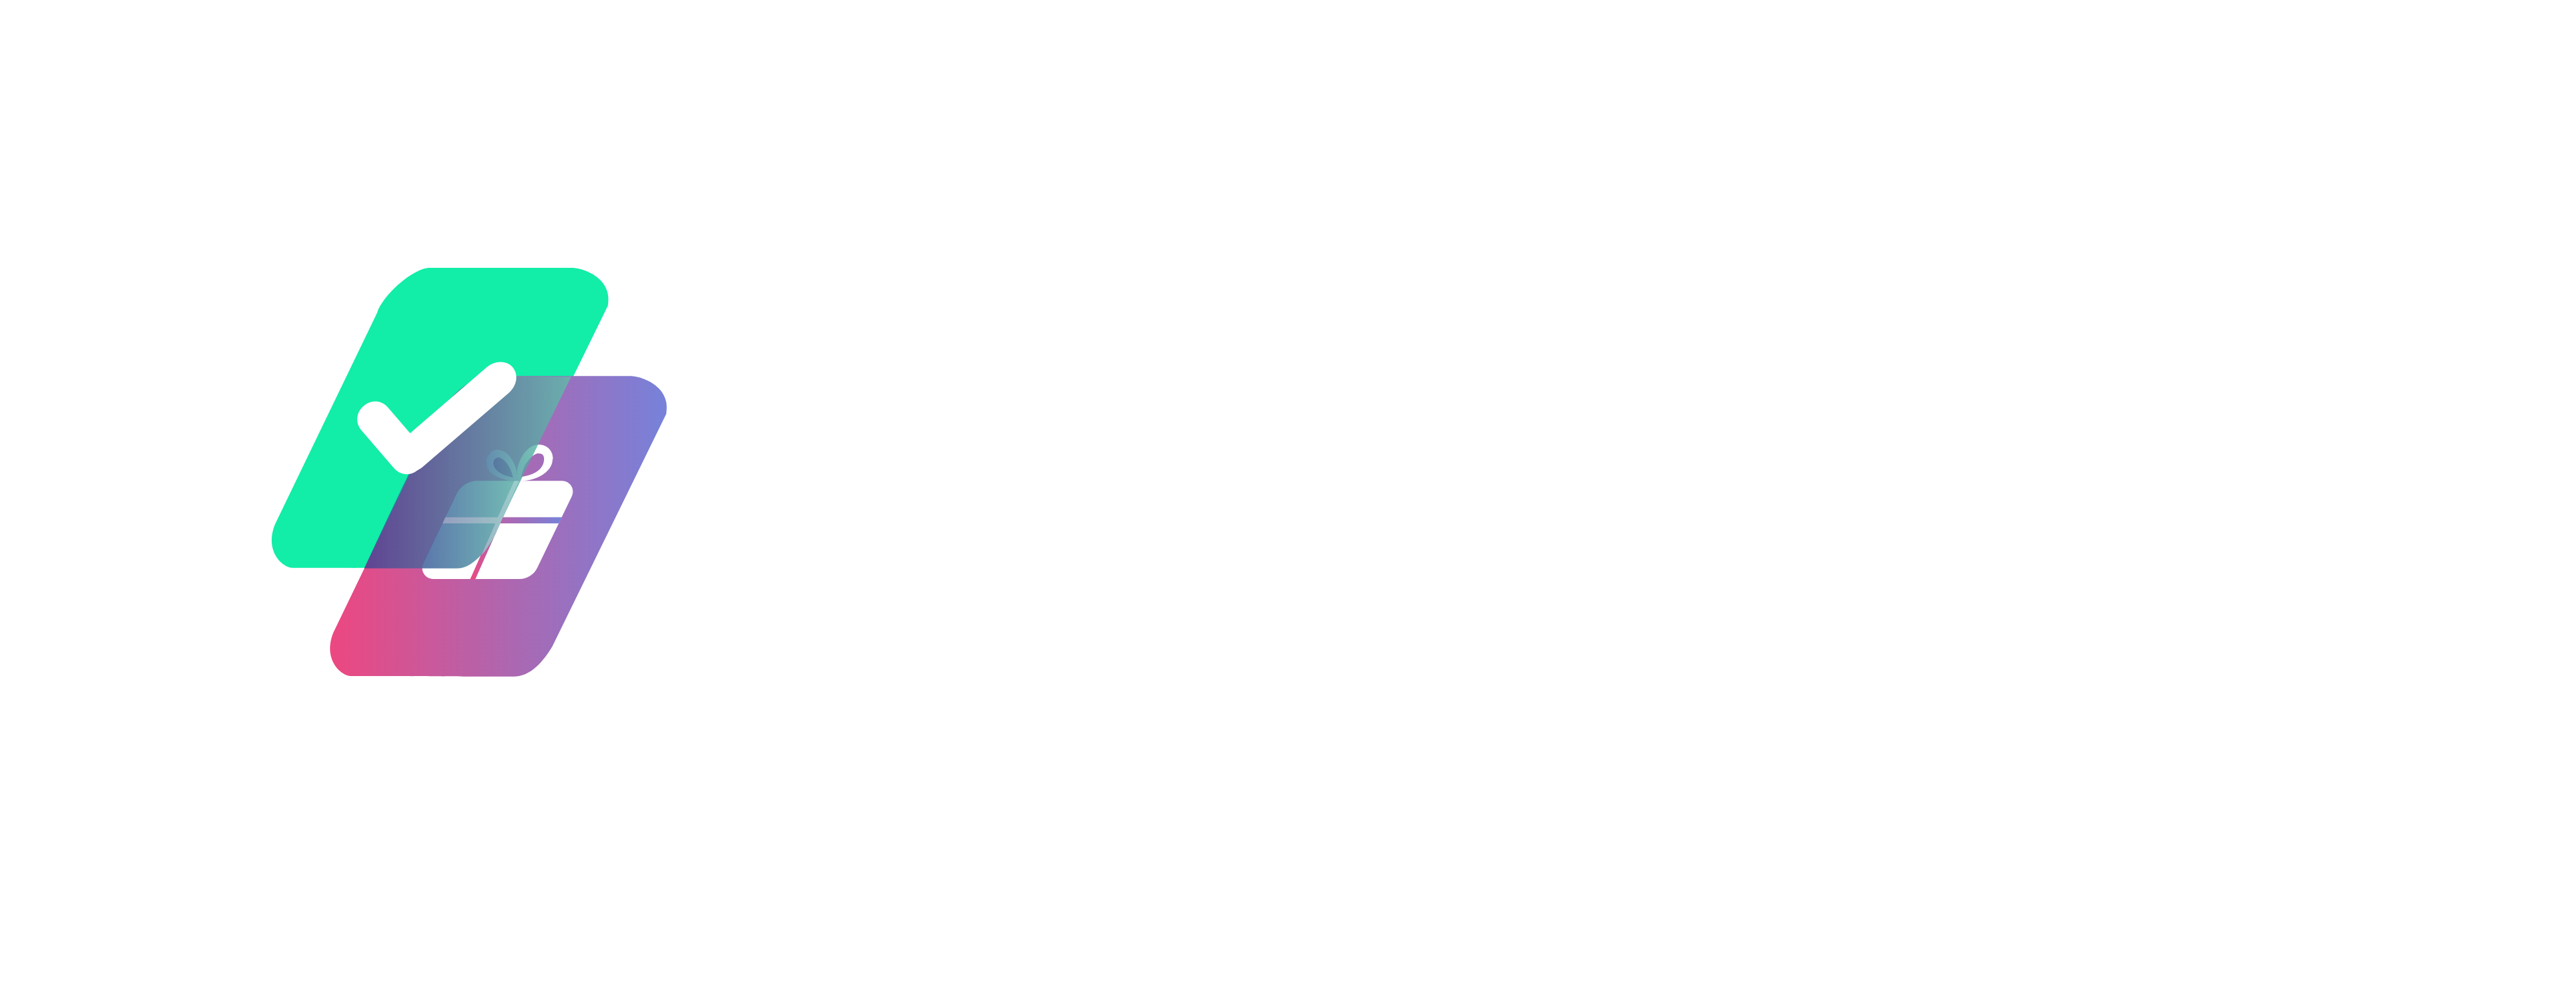 tooodooo logo png 2-3